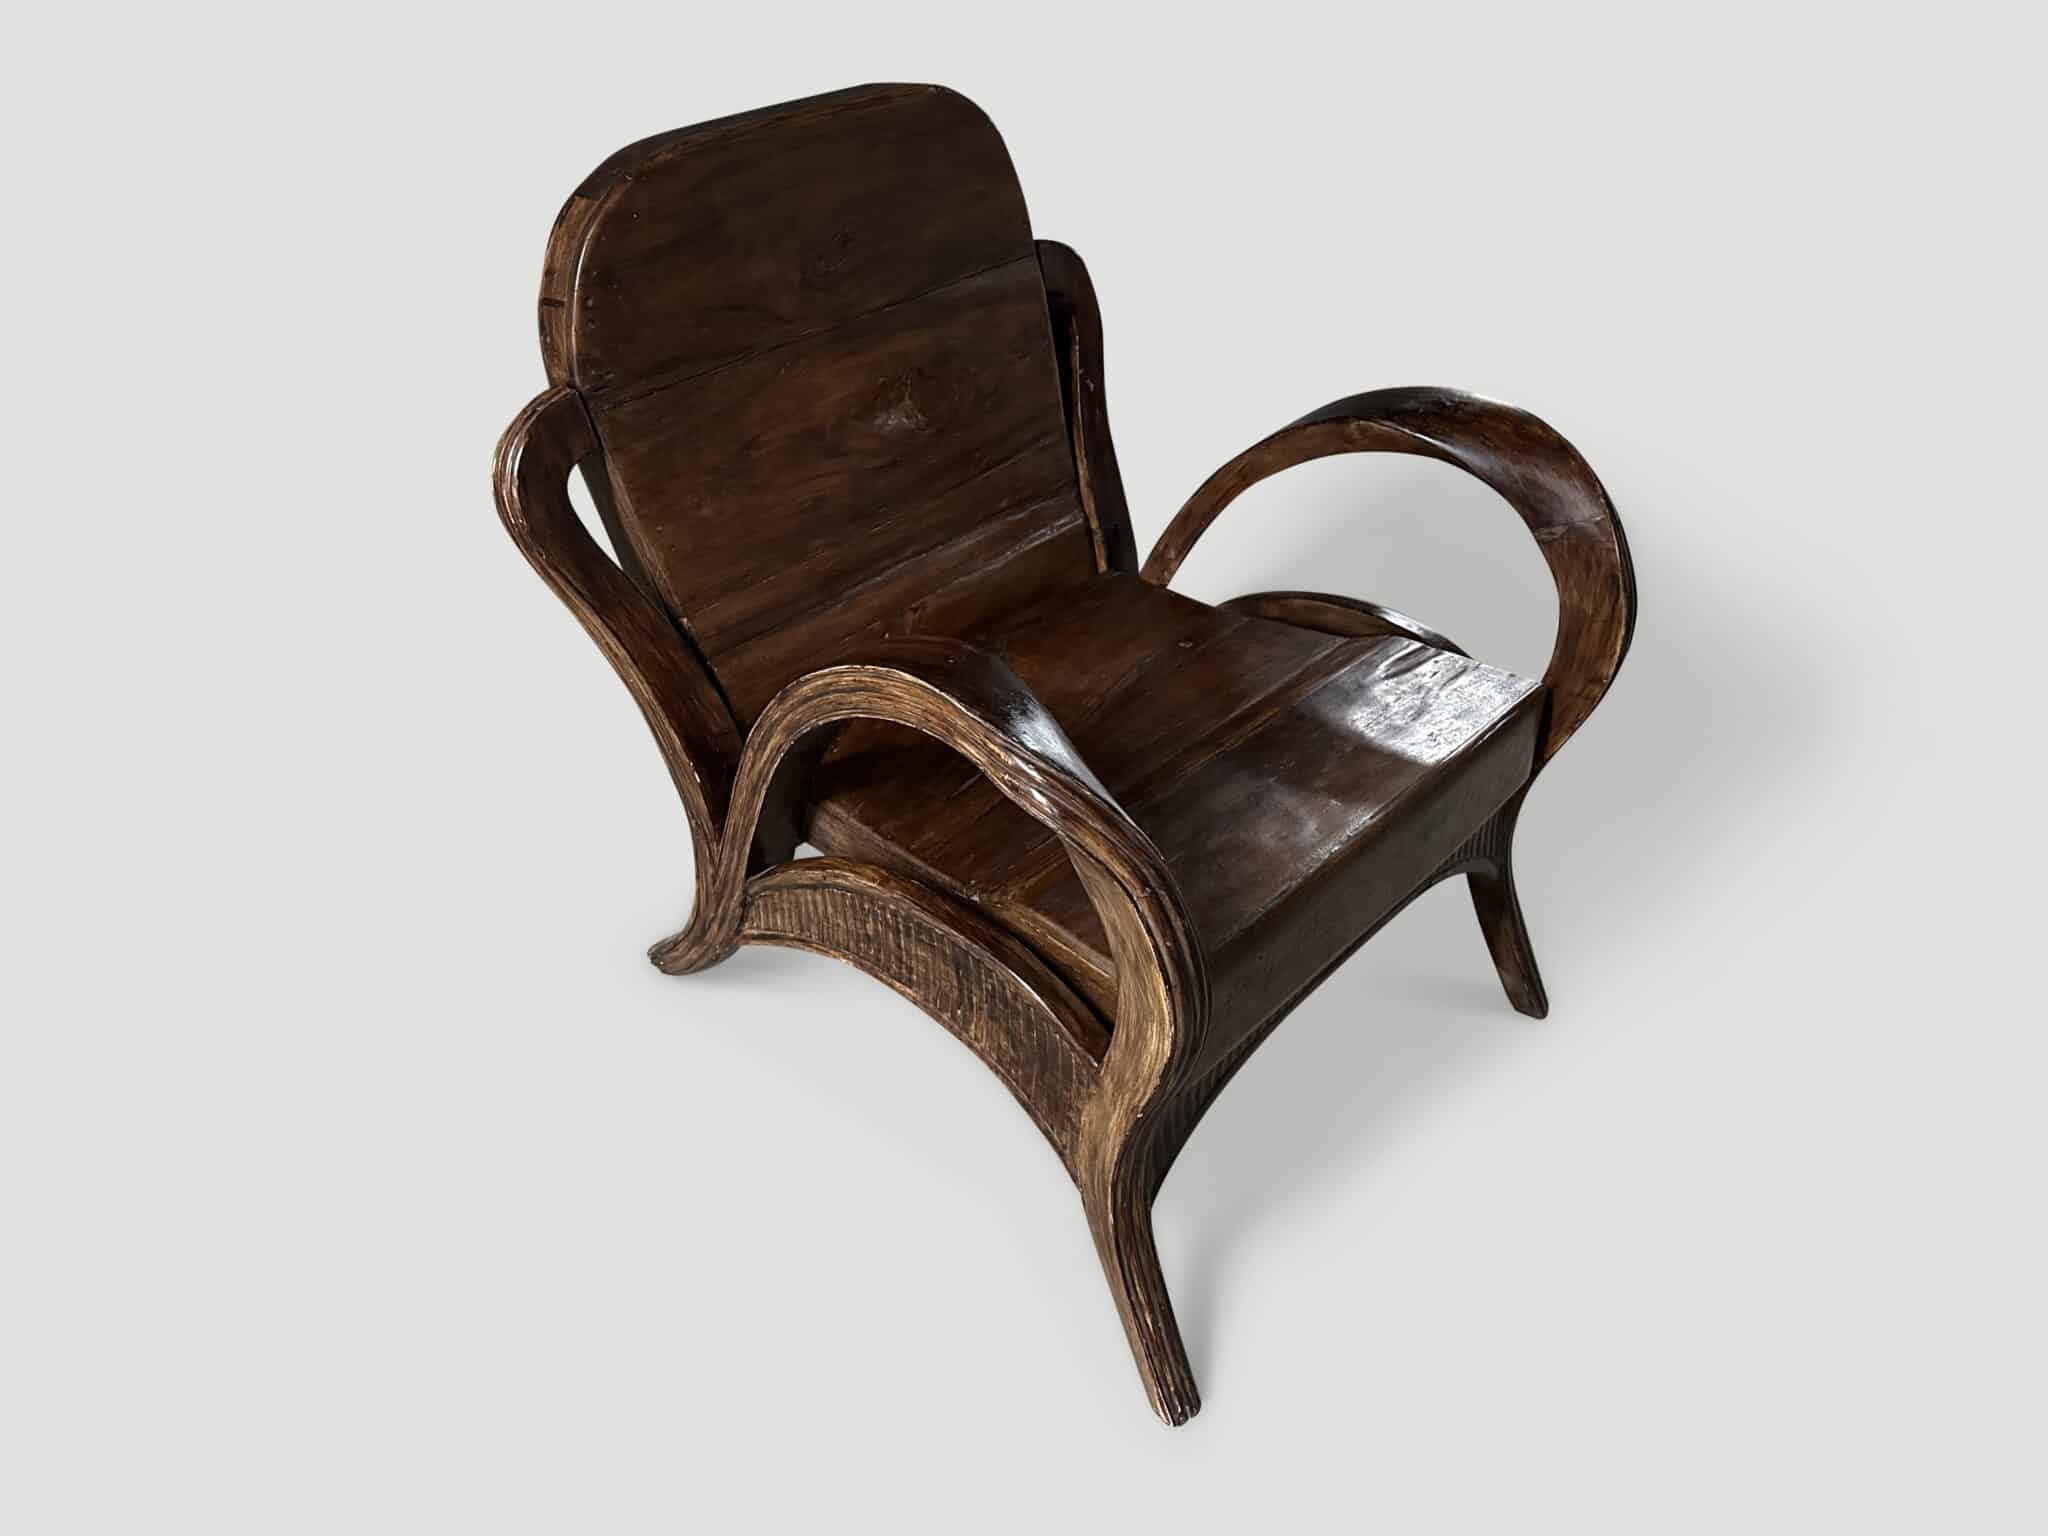 sculptural antique arm chair